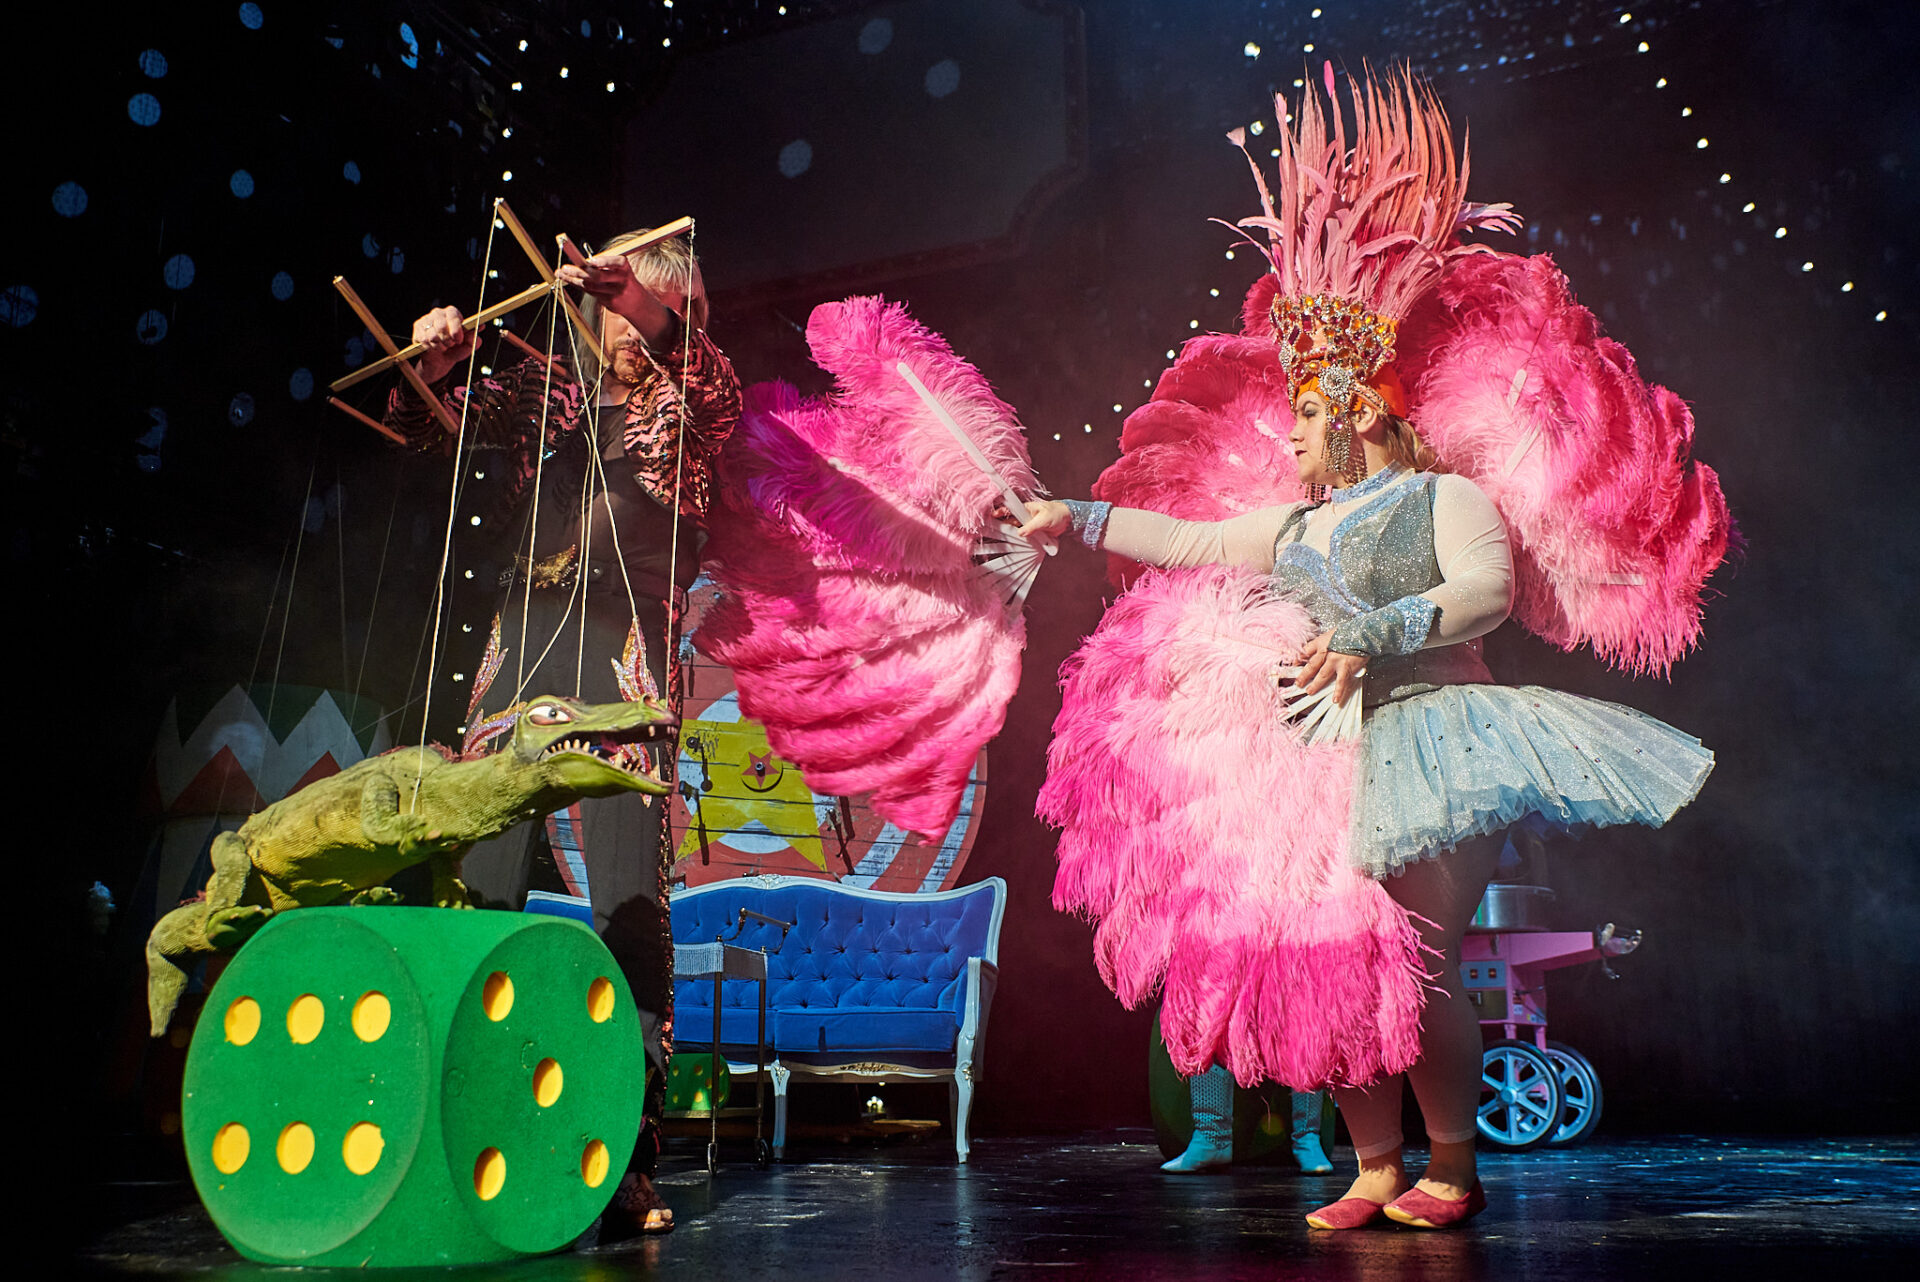 Eine Theaterbühne. Rechts steht eine Person im hellblauen Tutu, die einen Fächer aus großen, pinkfarbenen Federn in der Hand hält. Links liegt ein großer, grüner SChaumstoffwürfel, auf dem eine Krokodil-Marionette balanciert. Hinter dem Würfel steht der Puppenspieler.